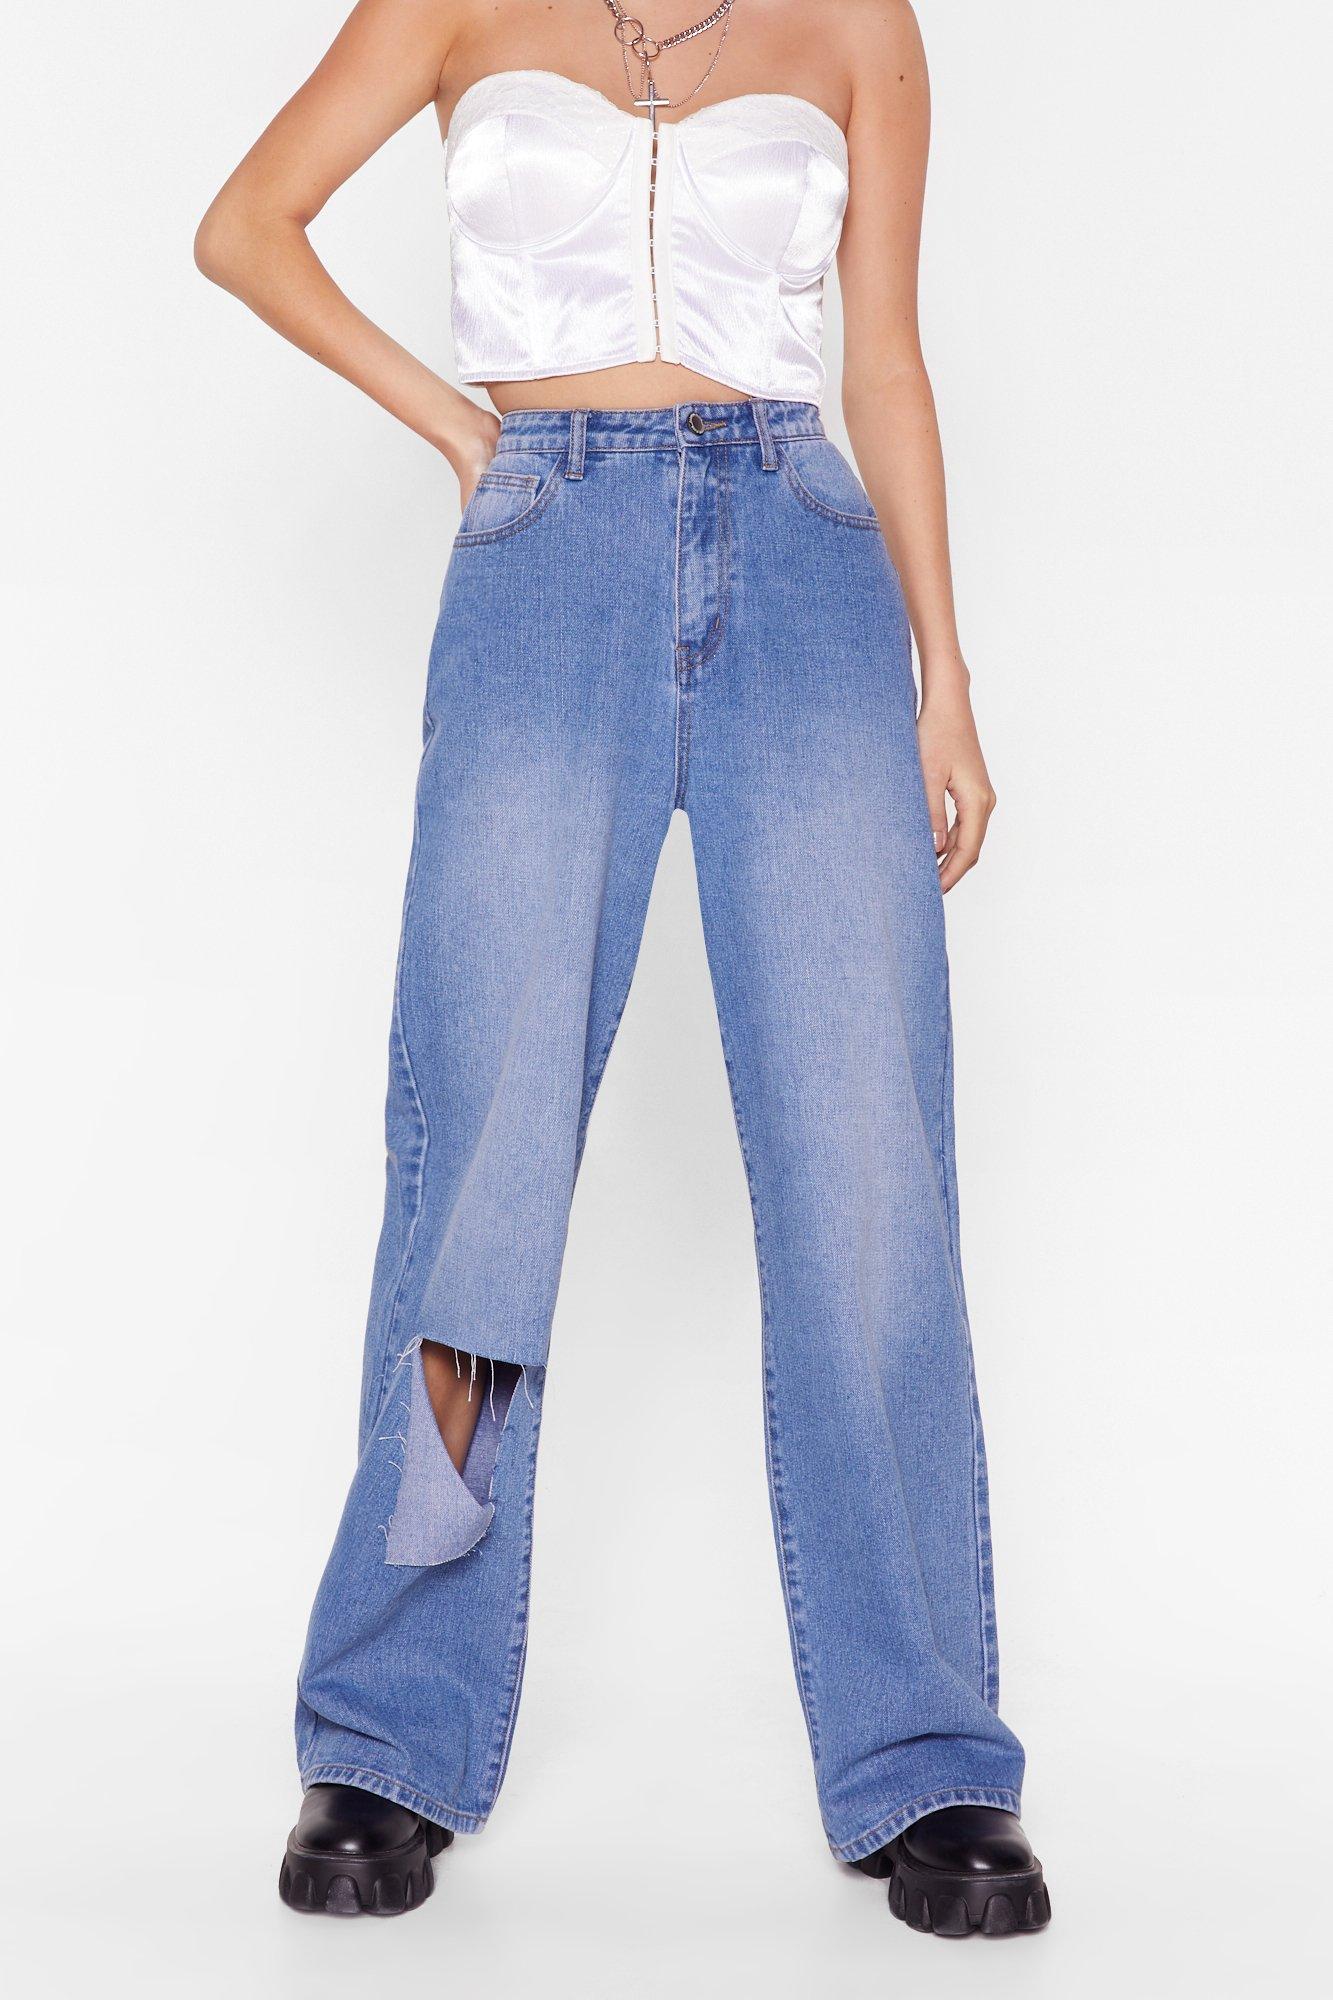 buy gloria vanderbilt jeans